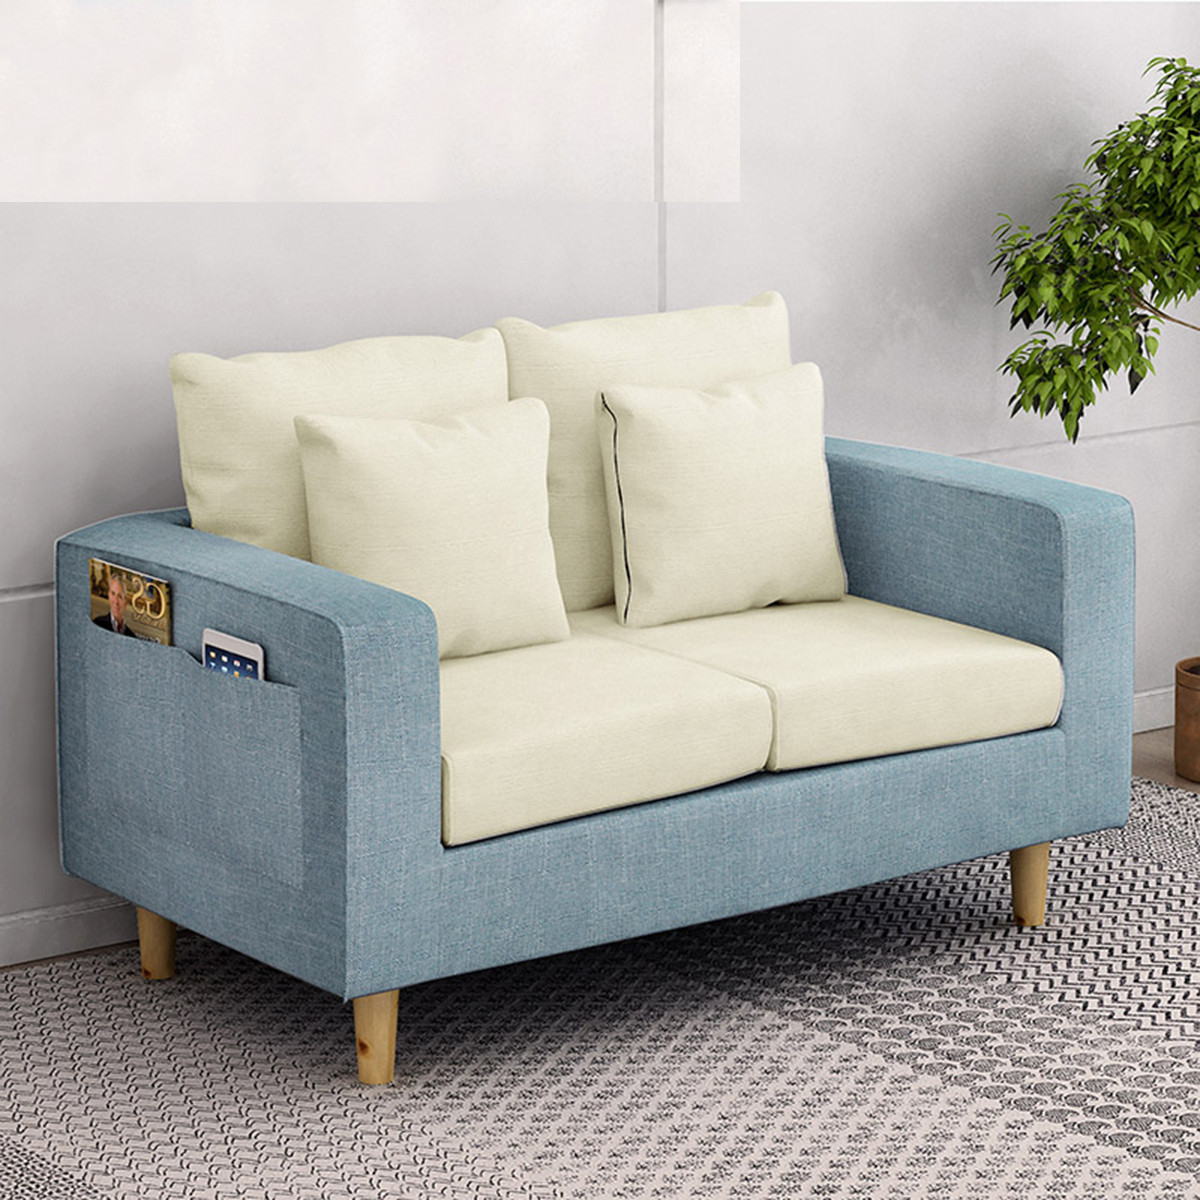 欧式布艺沙发简约单人沙发客厅小沙发小户型懒人沙发